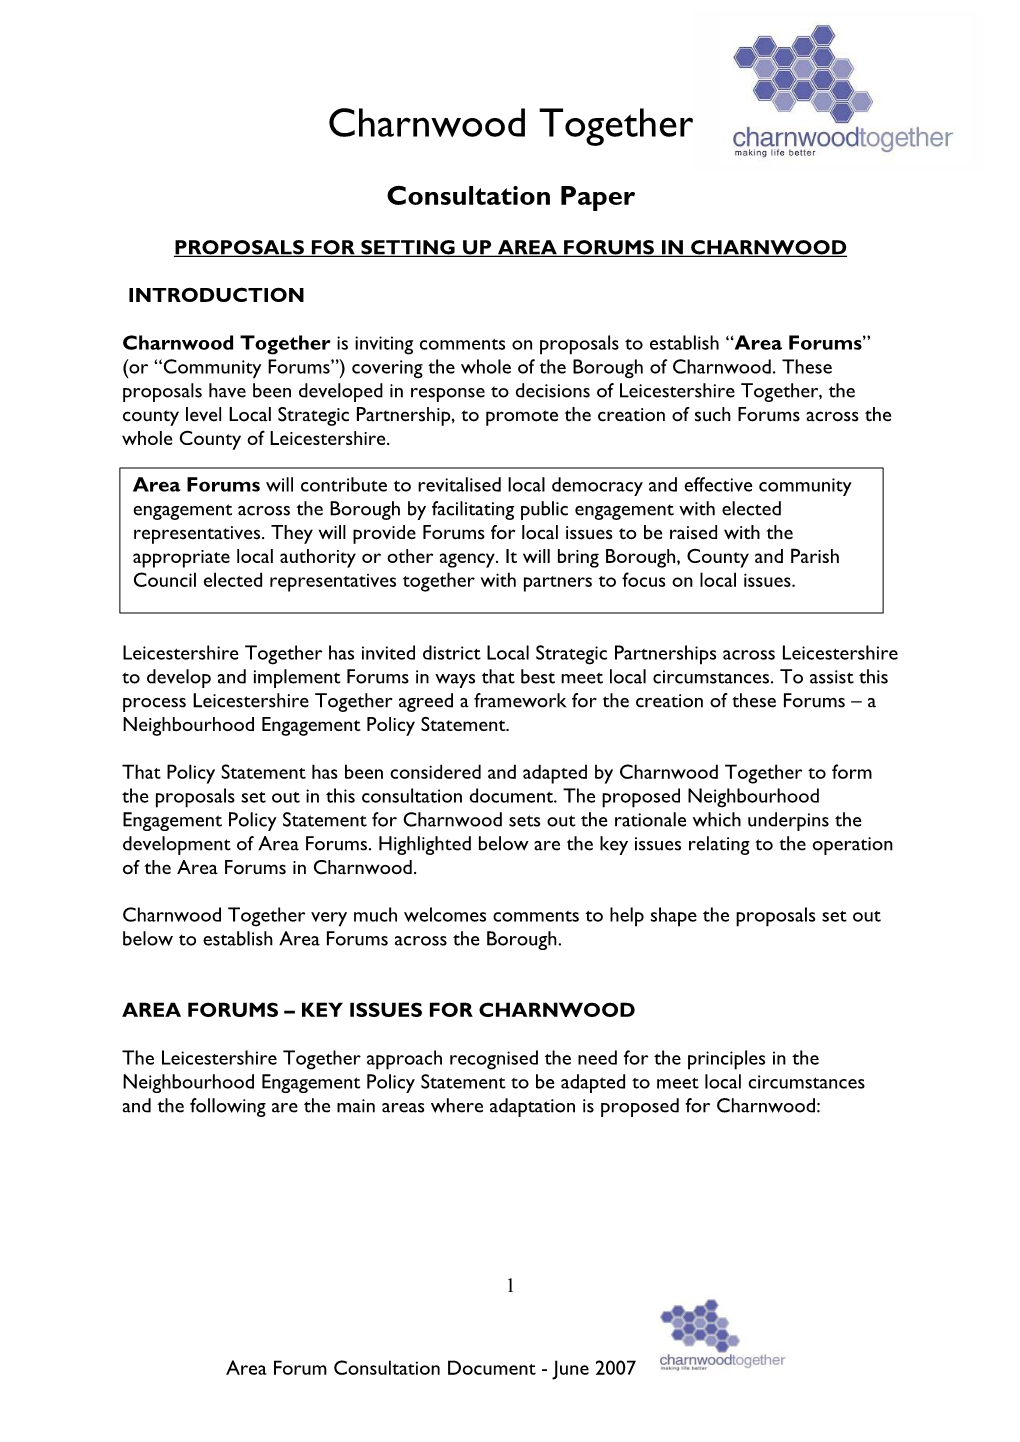 Area Forum Consultation Document - June 2007